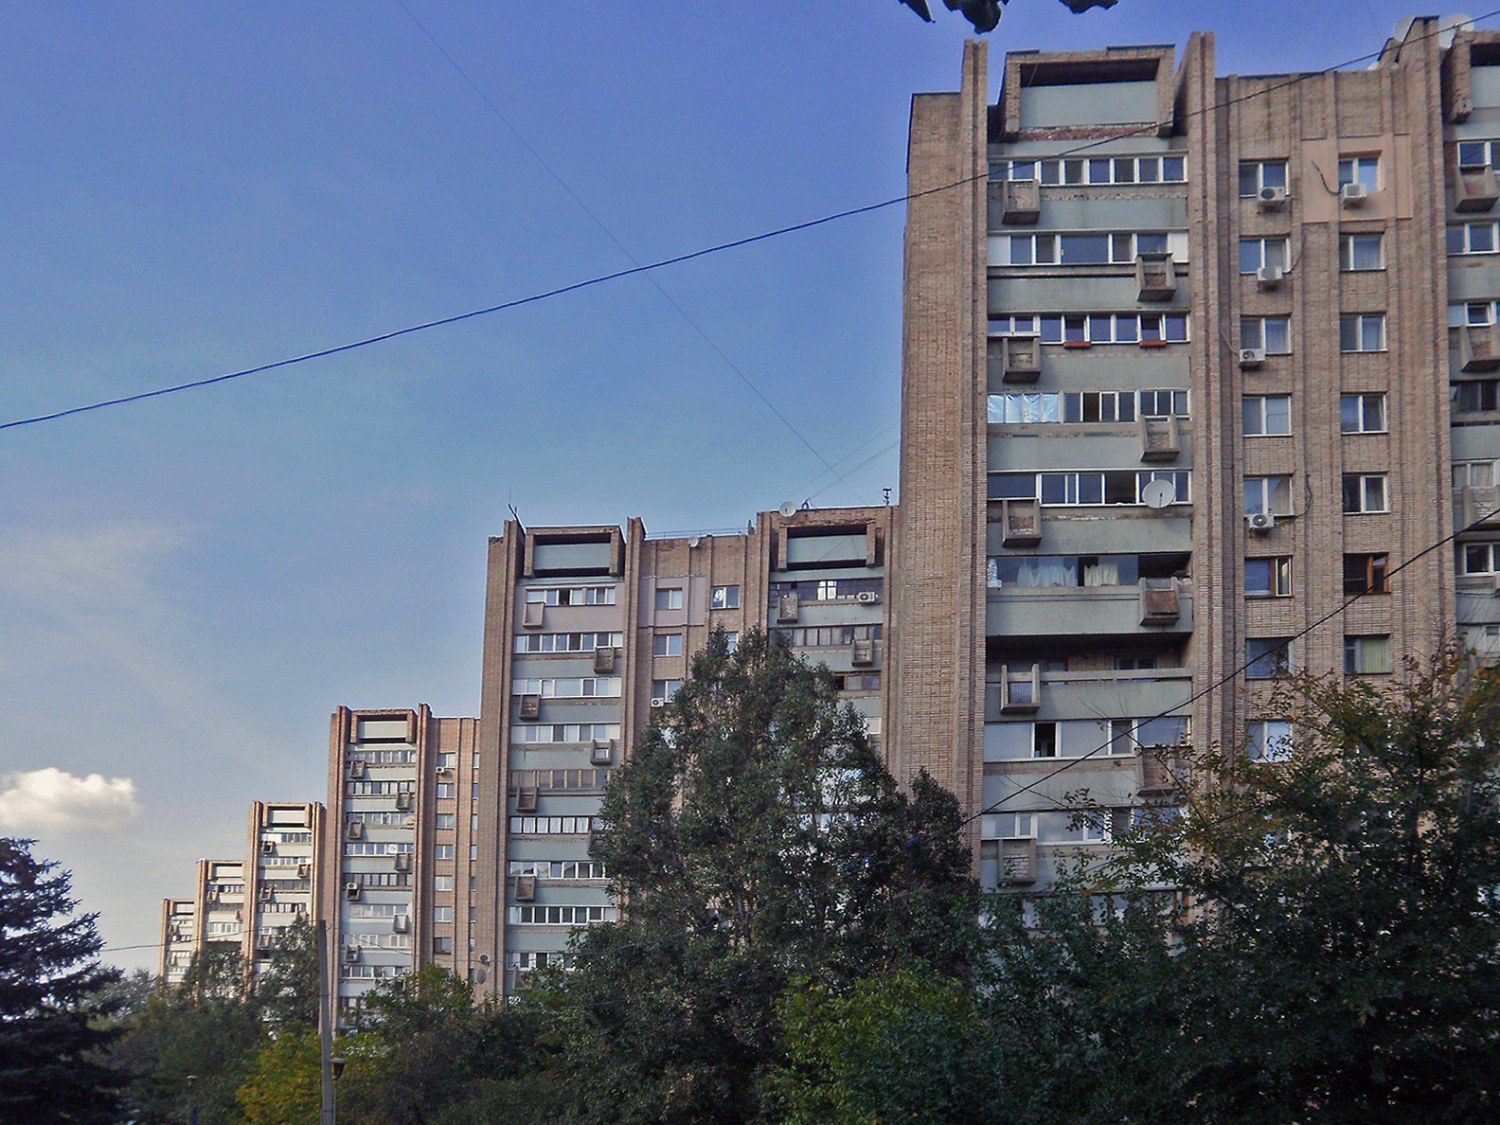 Будинок-гармошка, 2012 рік
Луганськ. Архітерктура модернізму.